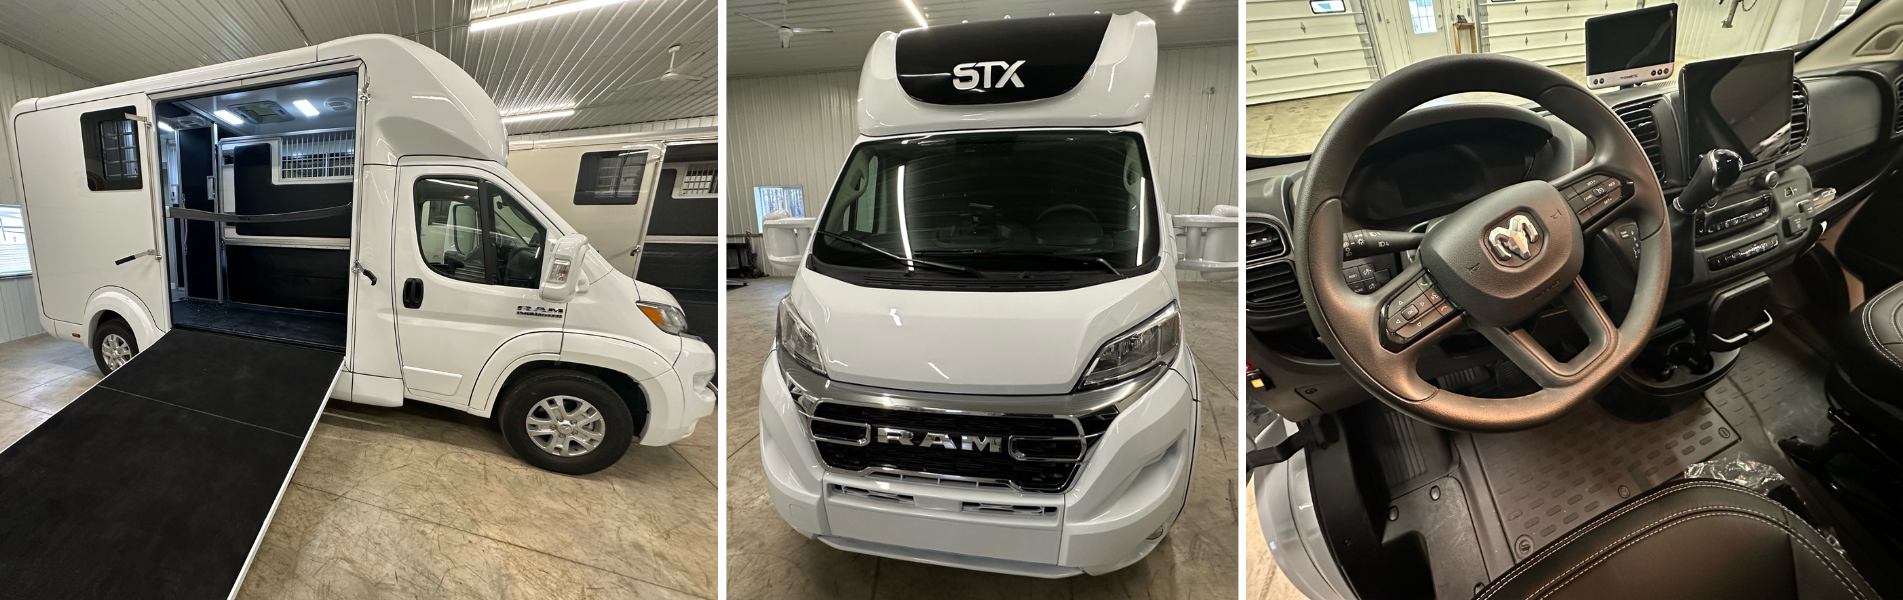 STX Horse Vans - Triple C Trailer Sales